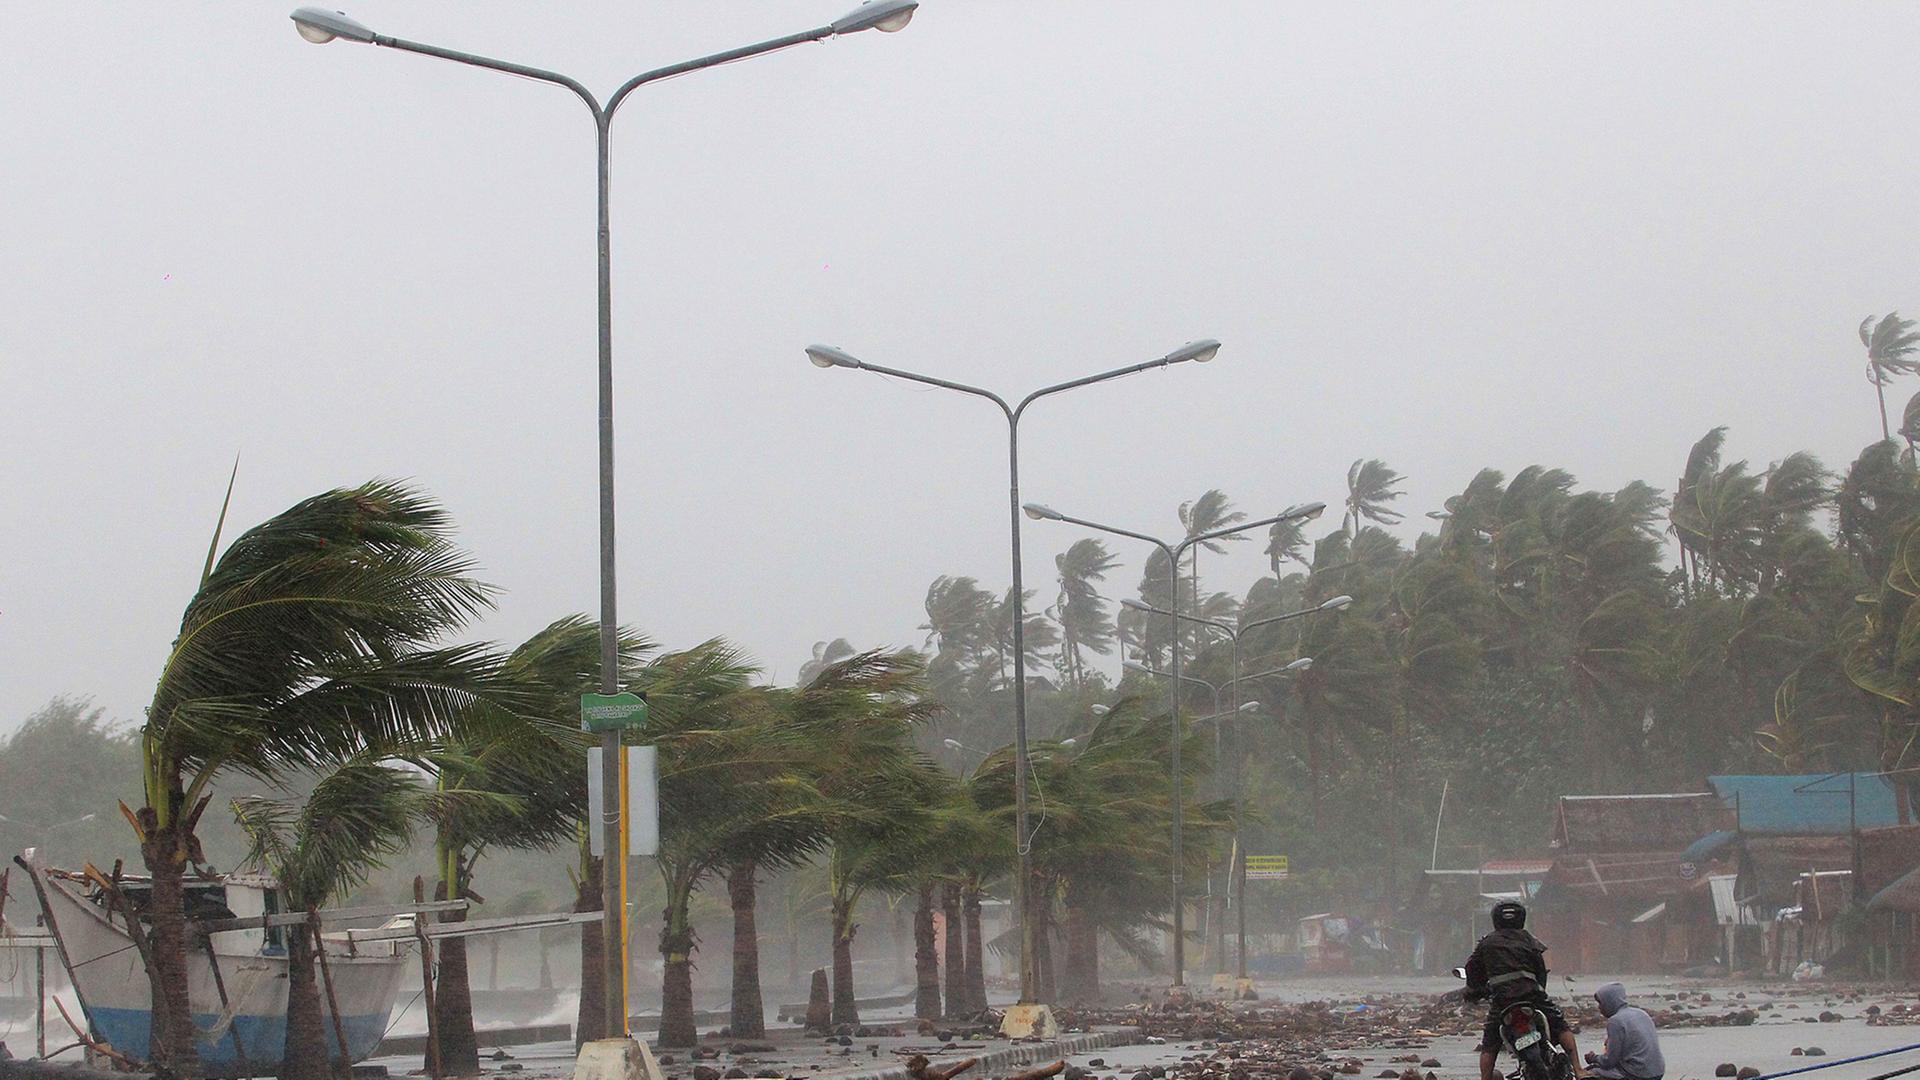 Der Sturm fegt über Palmen und eine Straße an einem Hafenkai, auf der Trümmer liegen. In der Ferne ein Motorradfahrer und ein Passant.